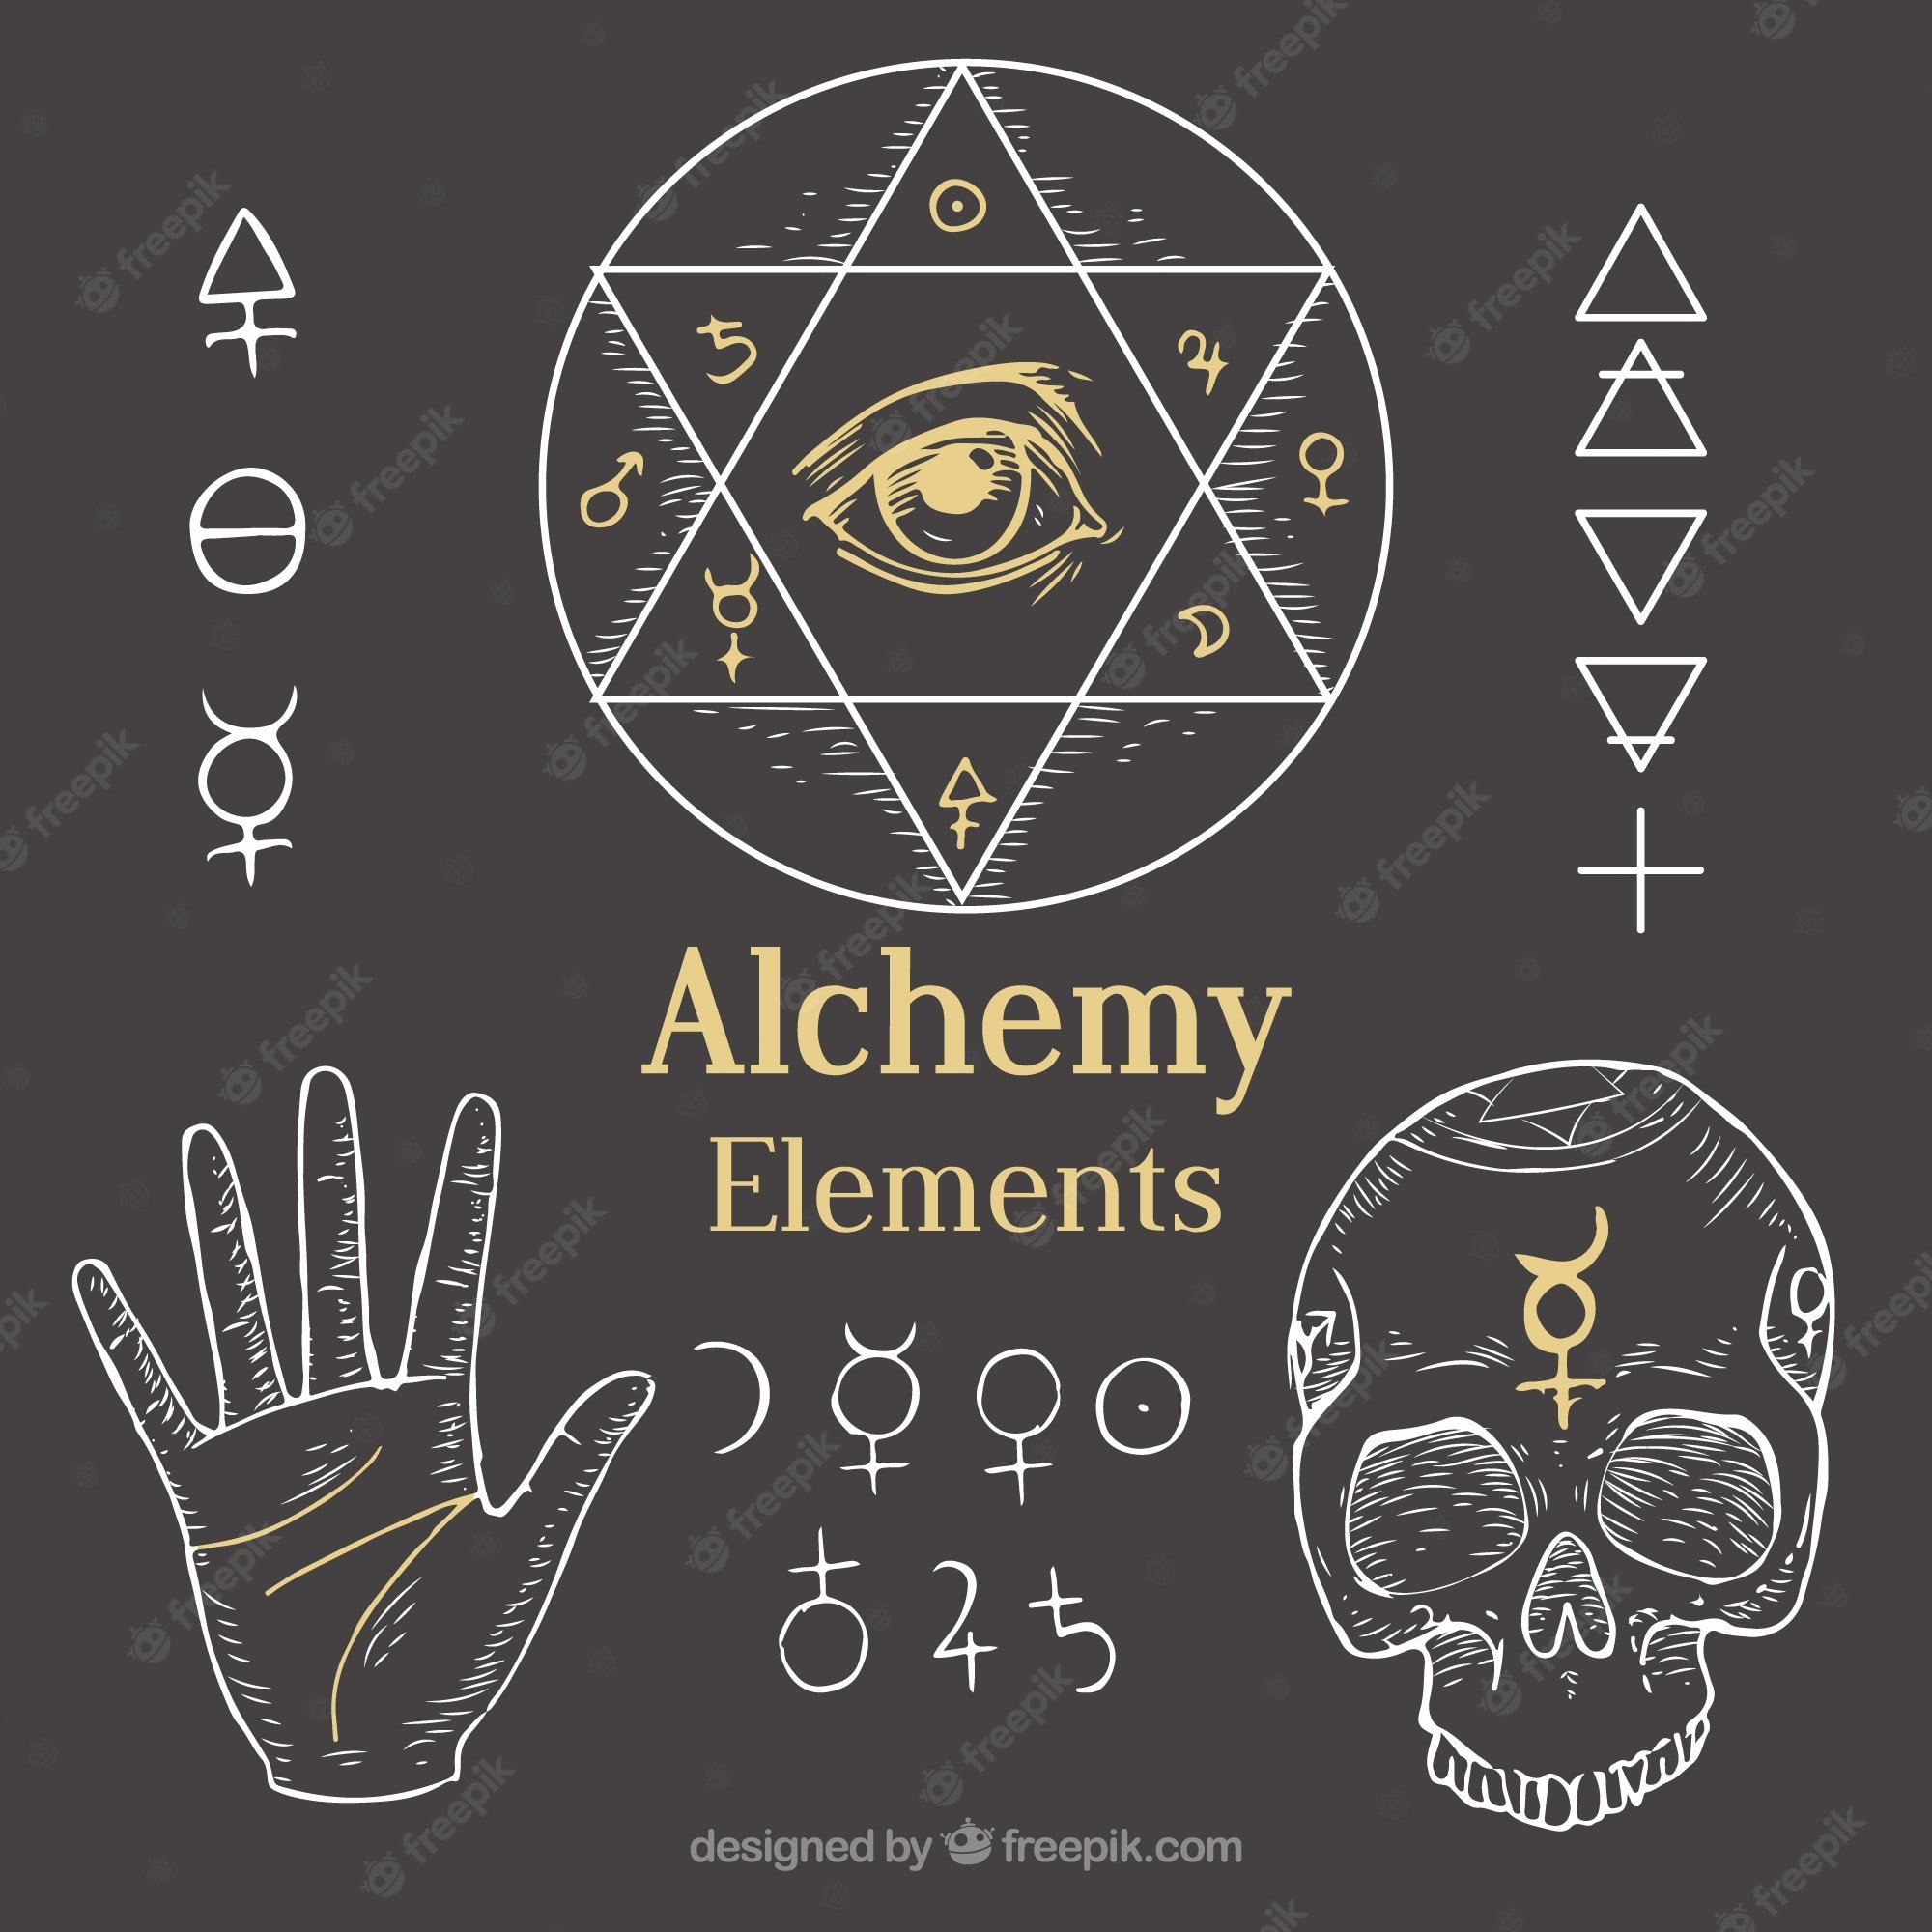 Алхимия души 9. Алхимическая таблица элементов. Алхимические символы элементов. Алхимические элементы стихий. Обозначение стихий в алхимии.